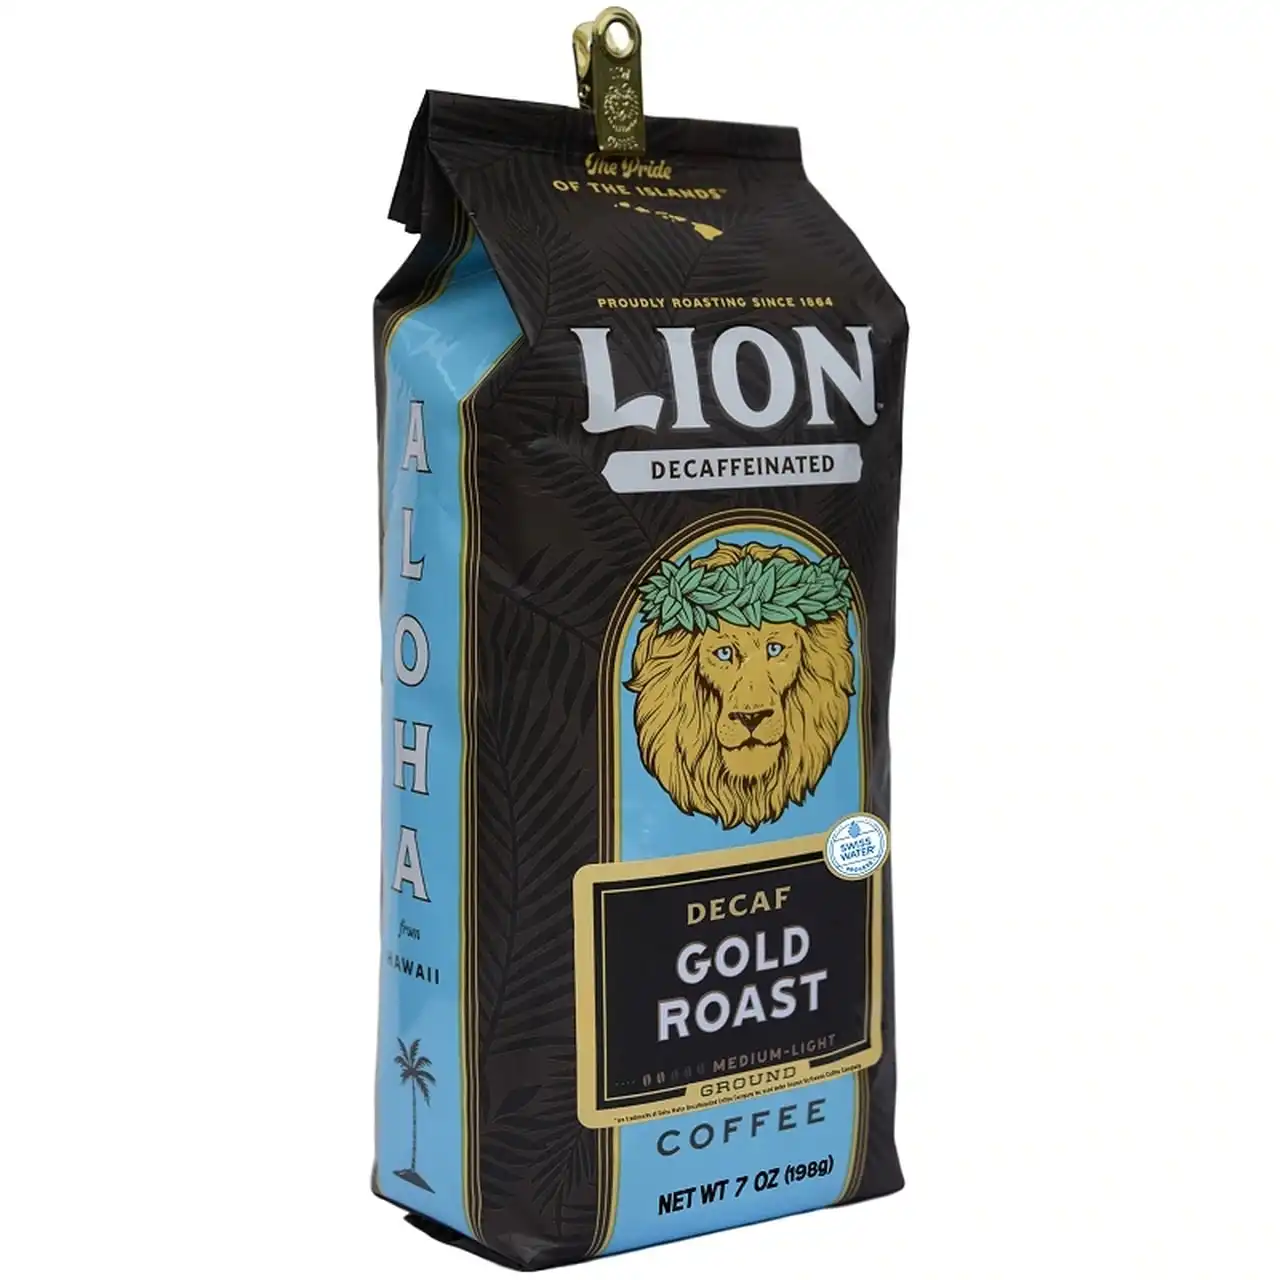 LION GOLD ROAST DECAF COFFEE